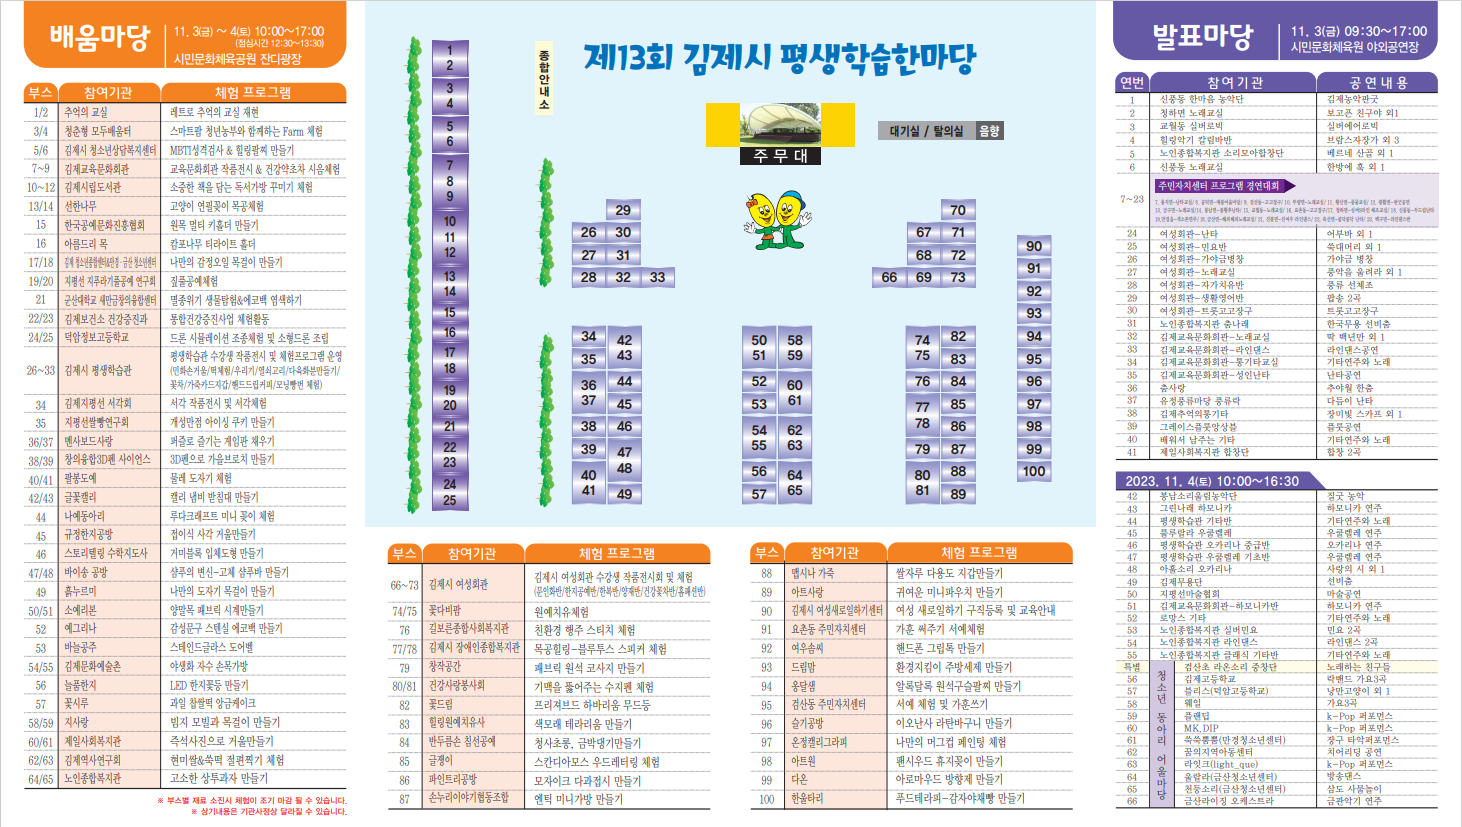 제13회 김제시 평생학습한마당 홍보리플릿-2(축소)